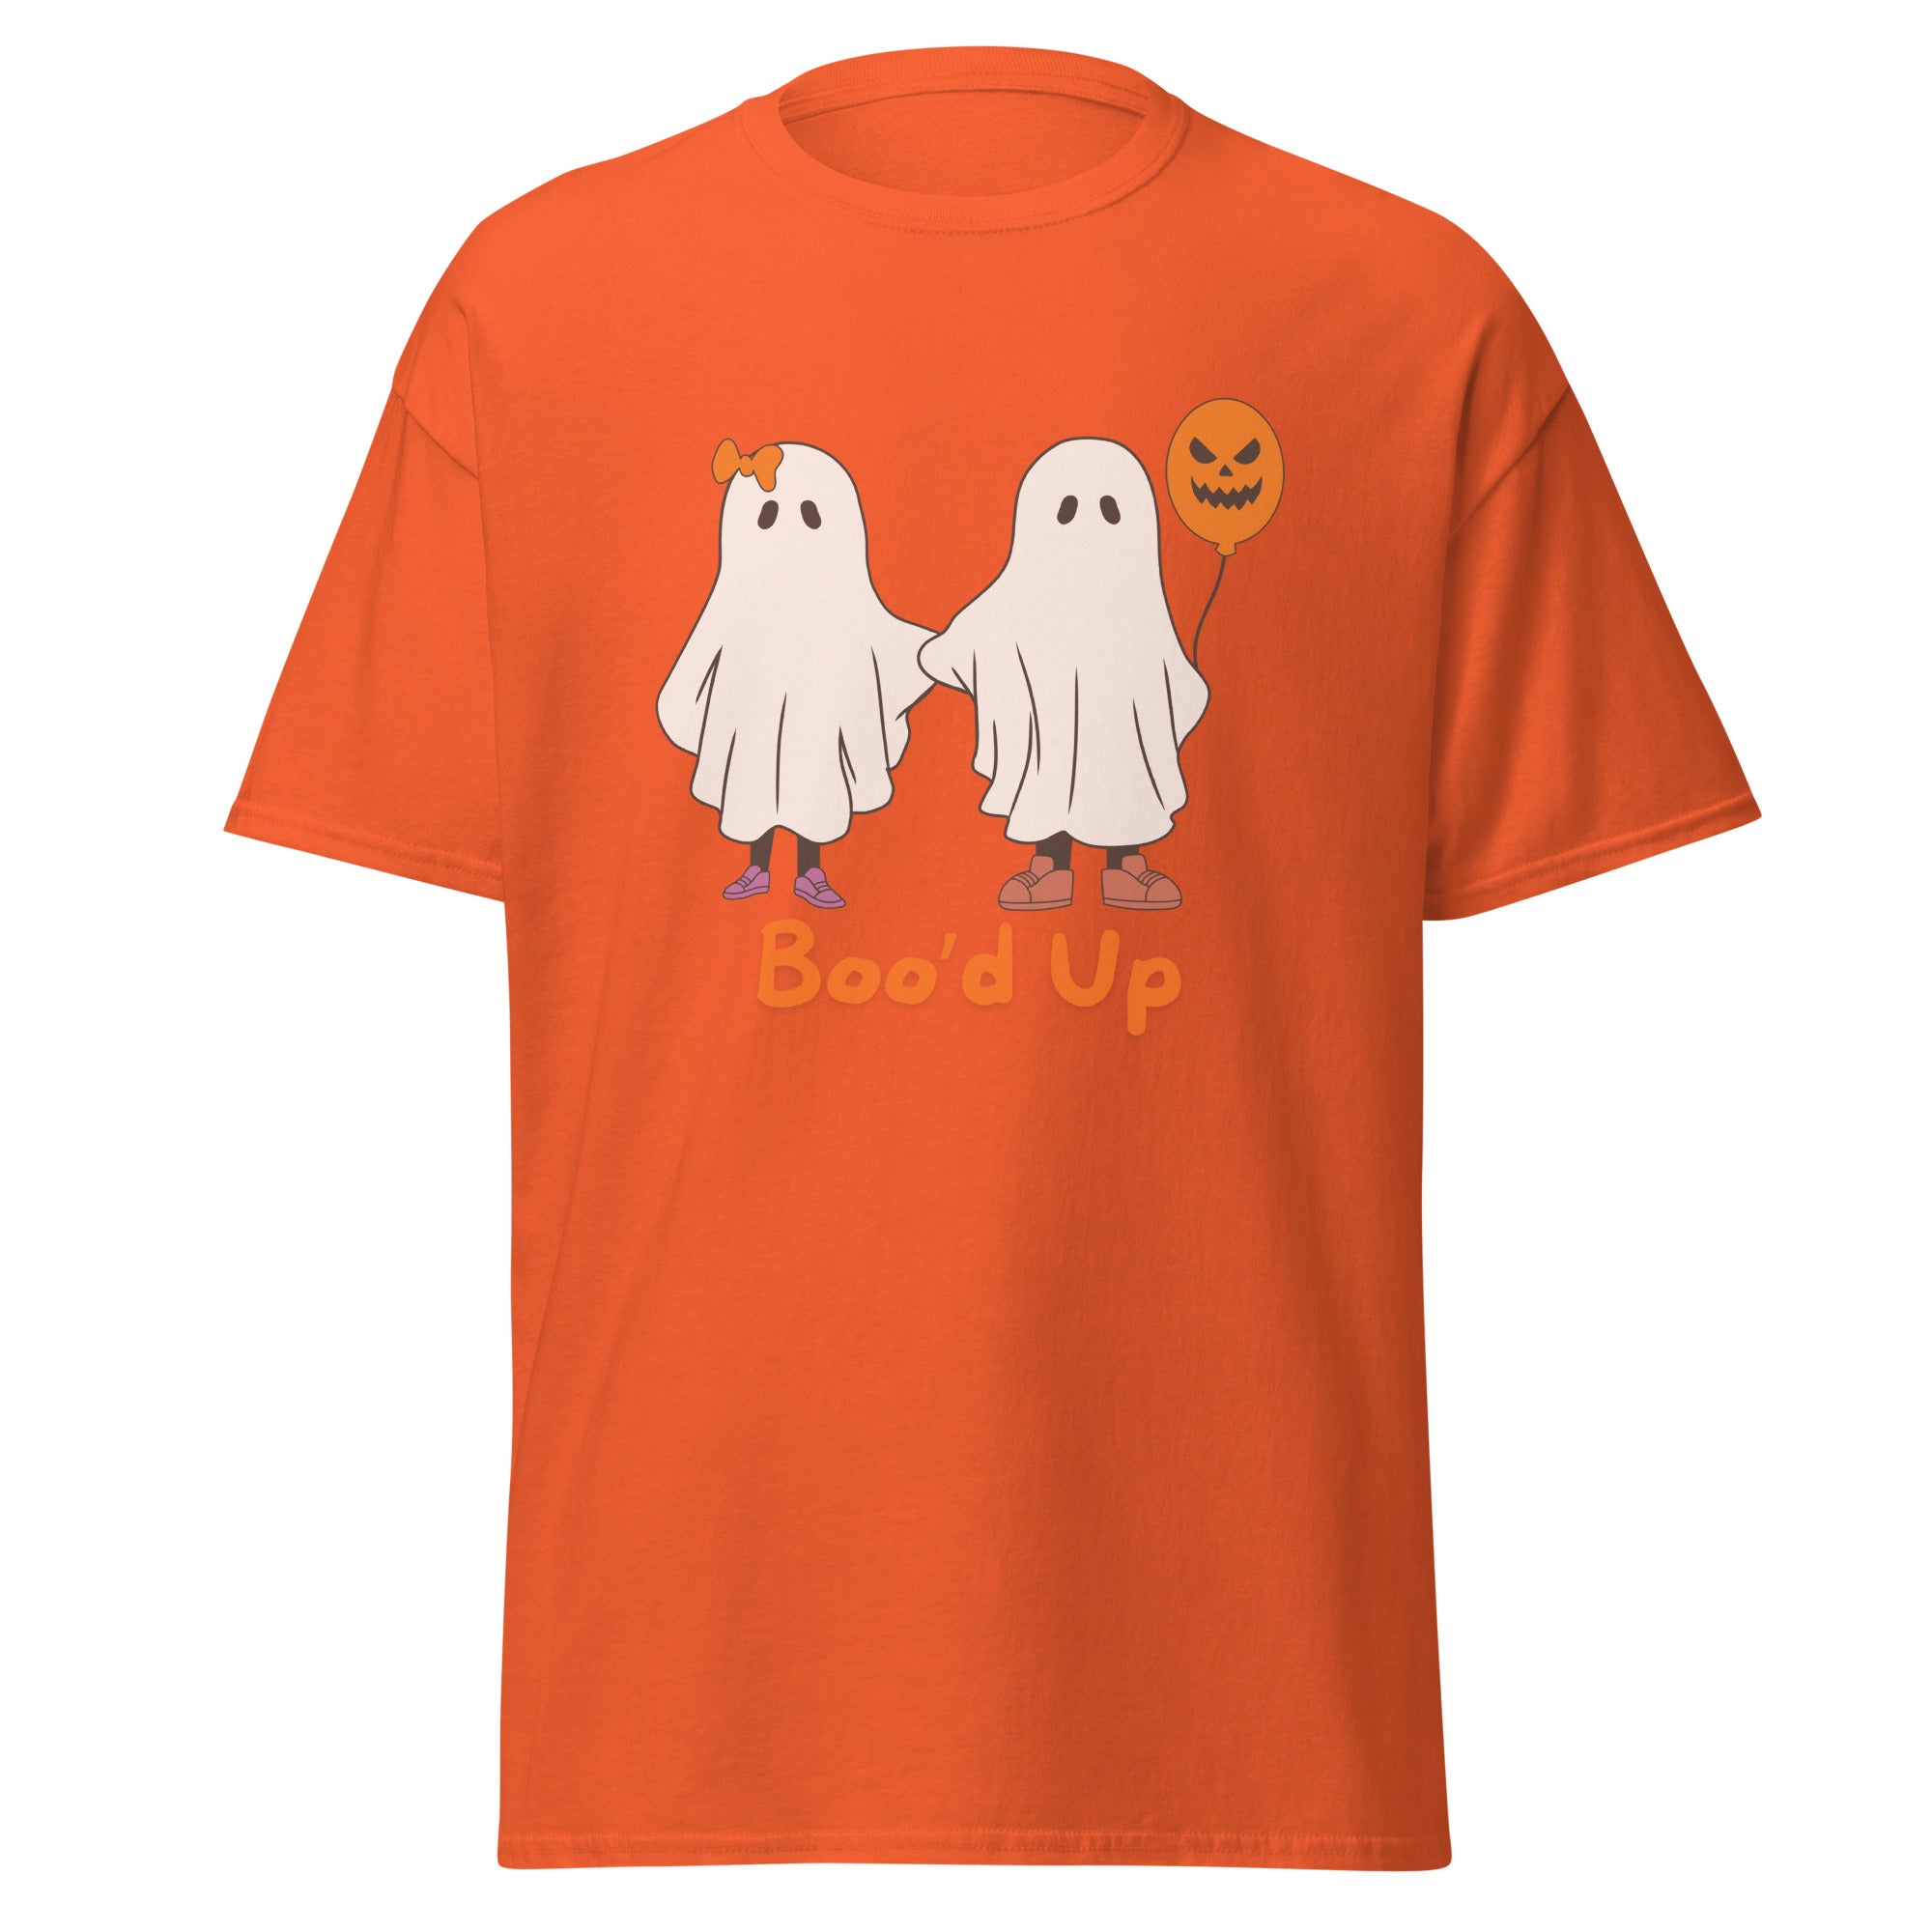 Boo'd Up Halloween T Shirts. Unisex